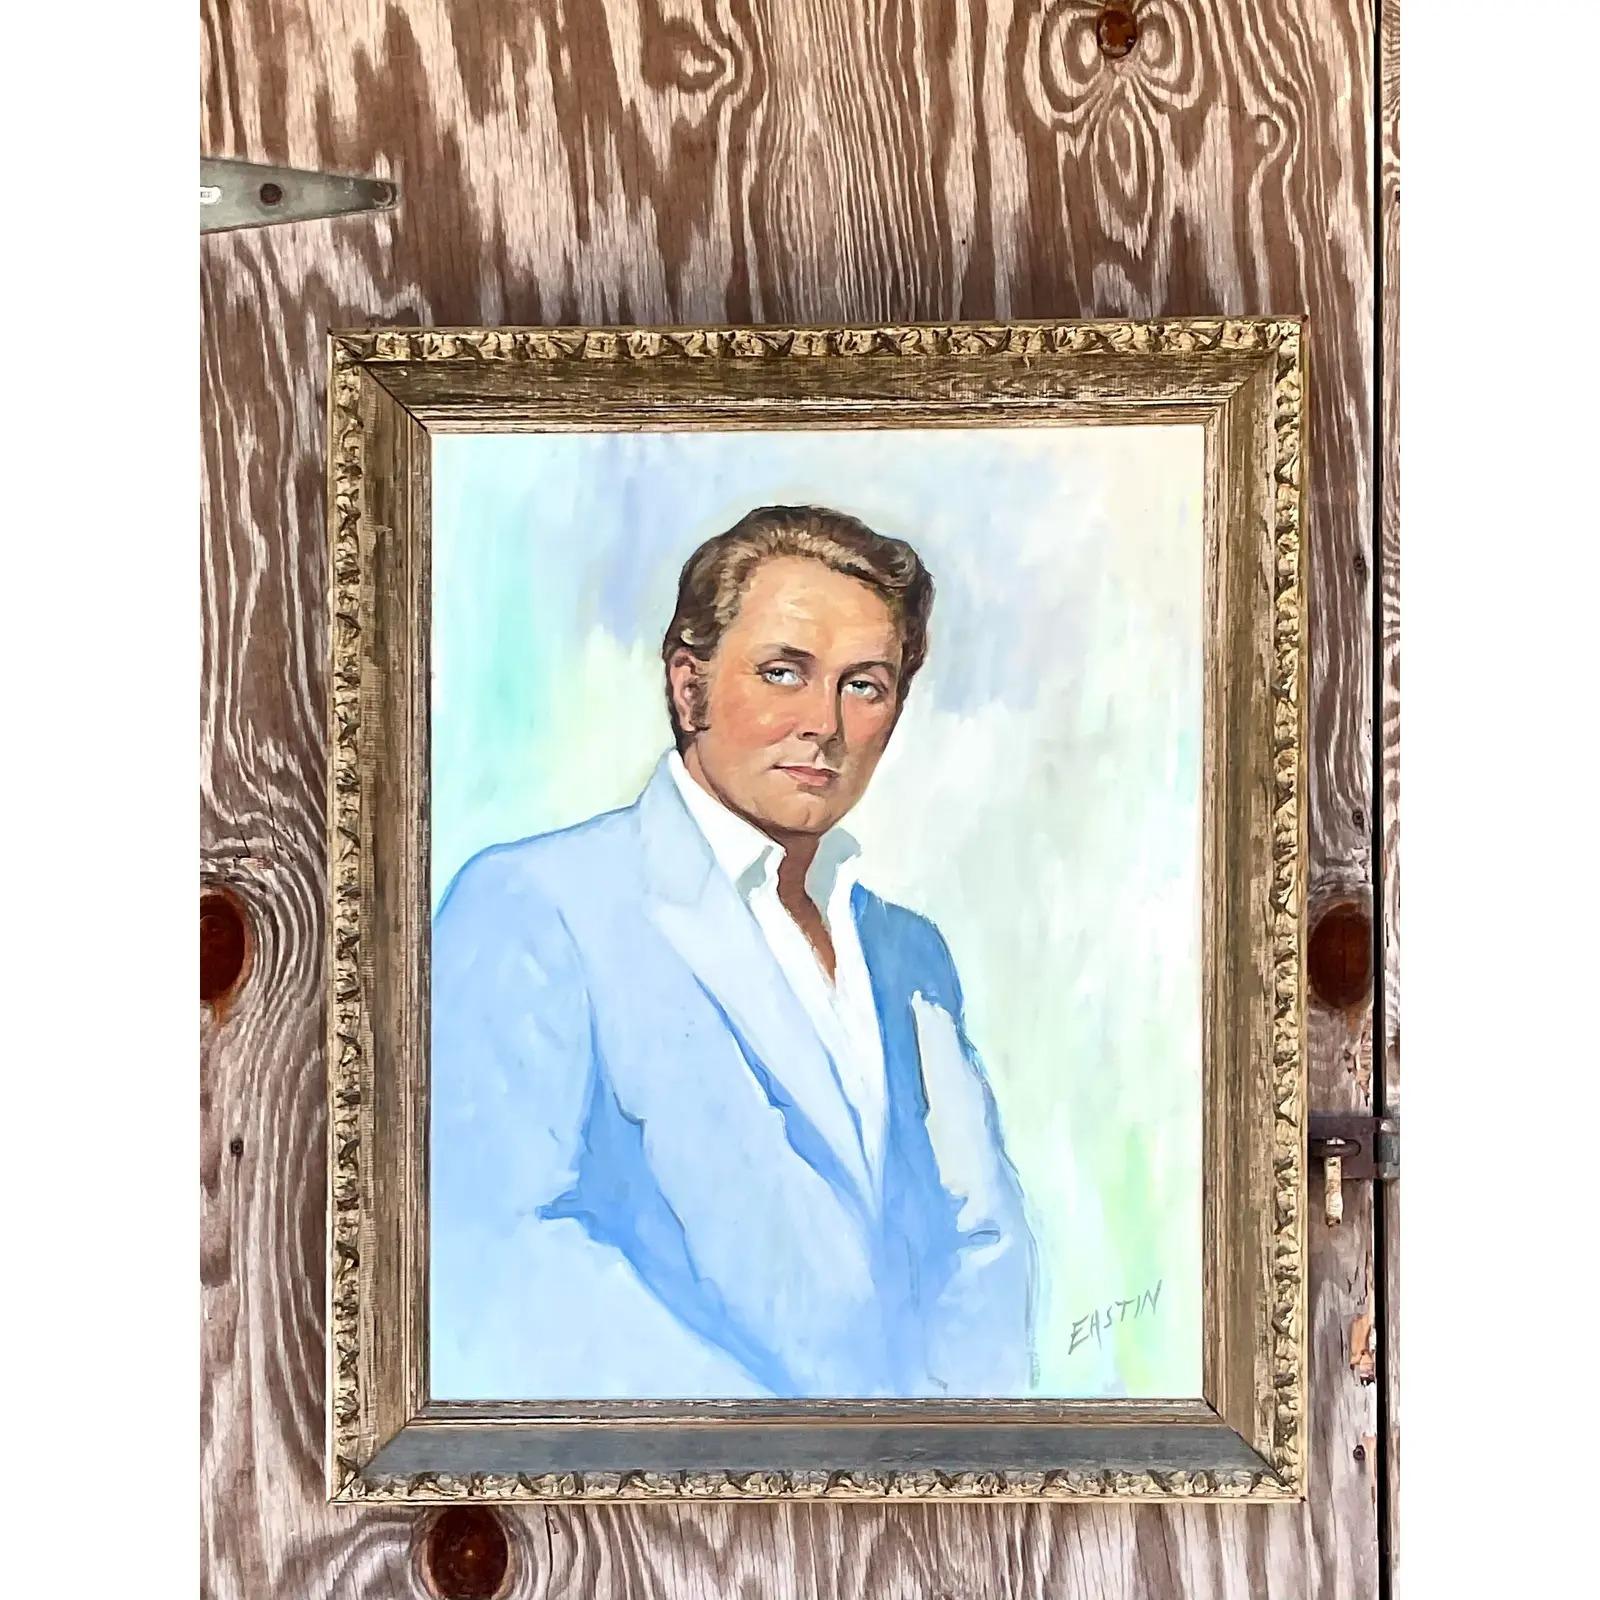 Ein fabelhaftes Original-Ölporträt im Vintage-Stil. Eine wunderschön kolorierte Komposition eines schneidigen Gentleman. Vom Künstler signiert. Erworben aus einem Nachlass in Palm Beach.